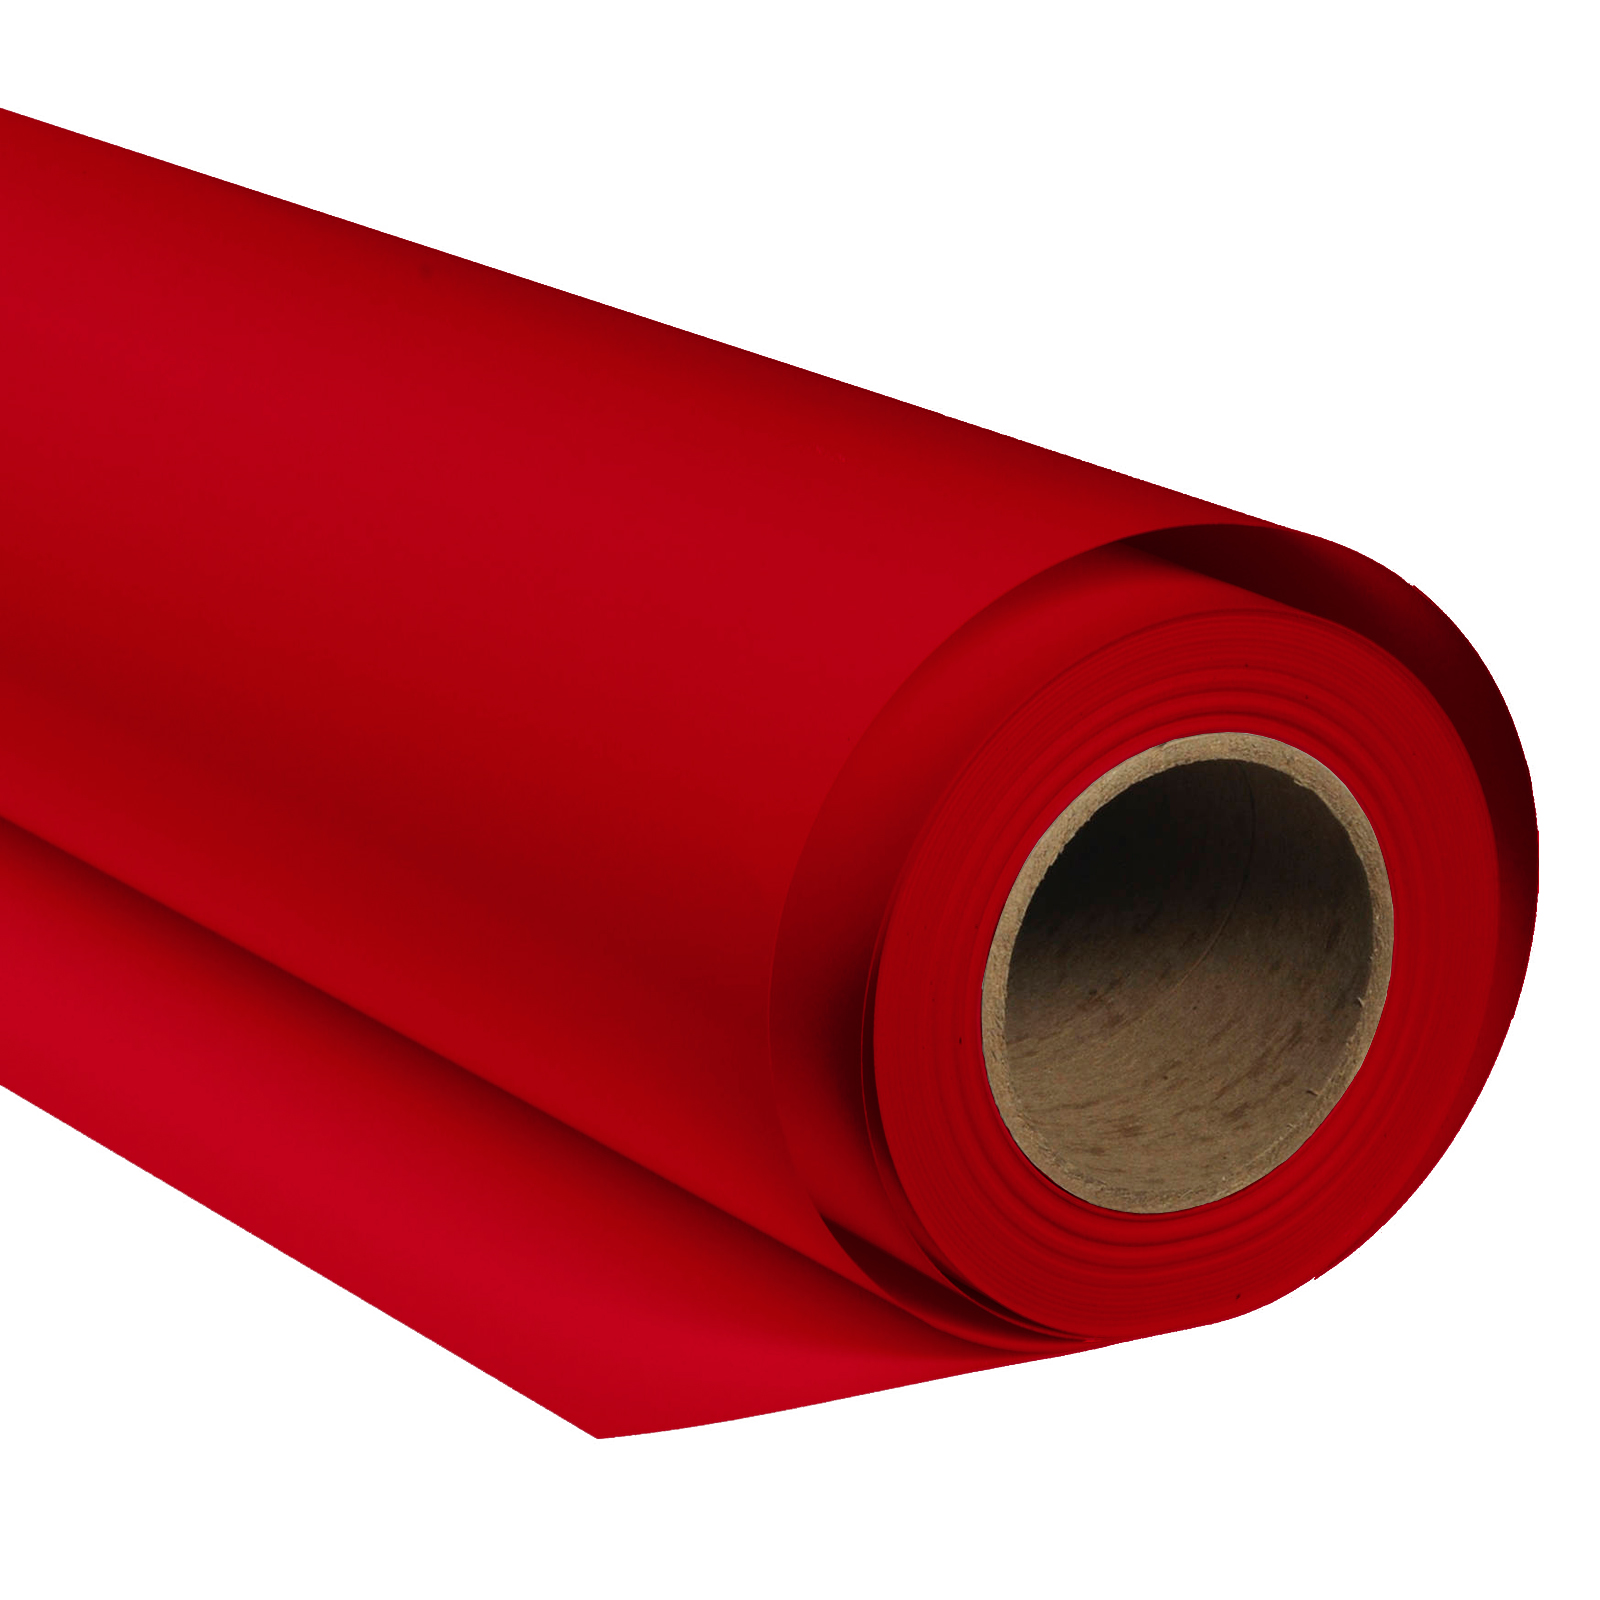 BRESSER SBP13 Papierhintergrundrolle 3,56 x 15m Crimson Rot